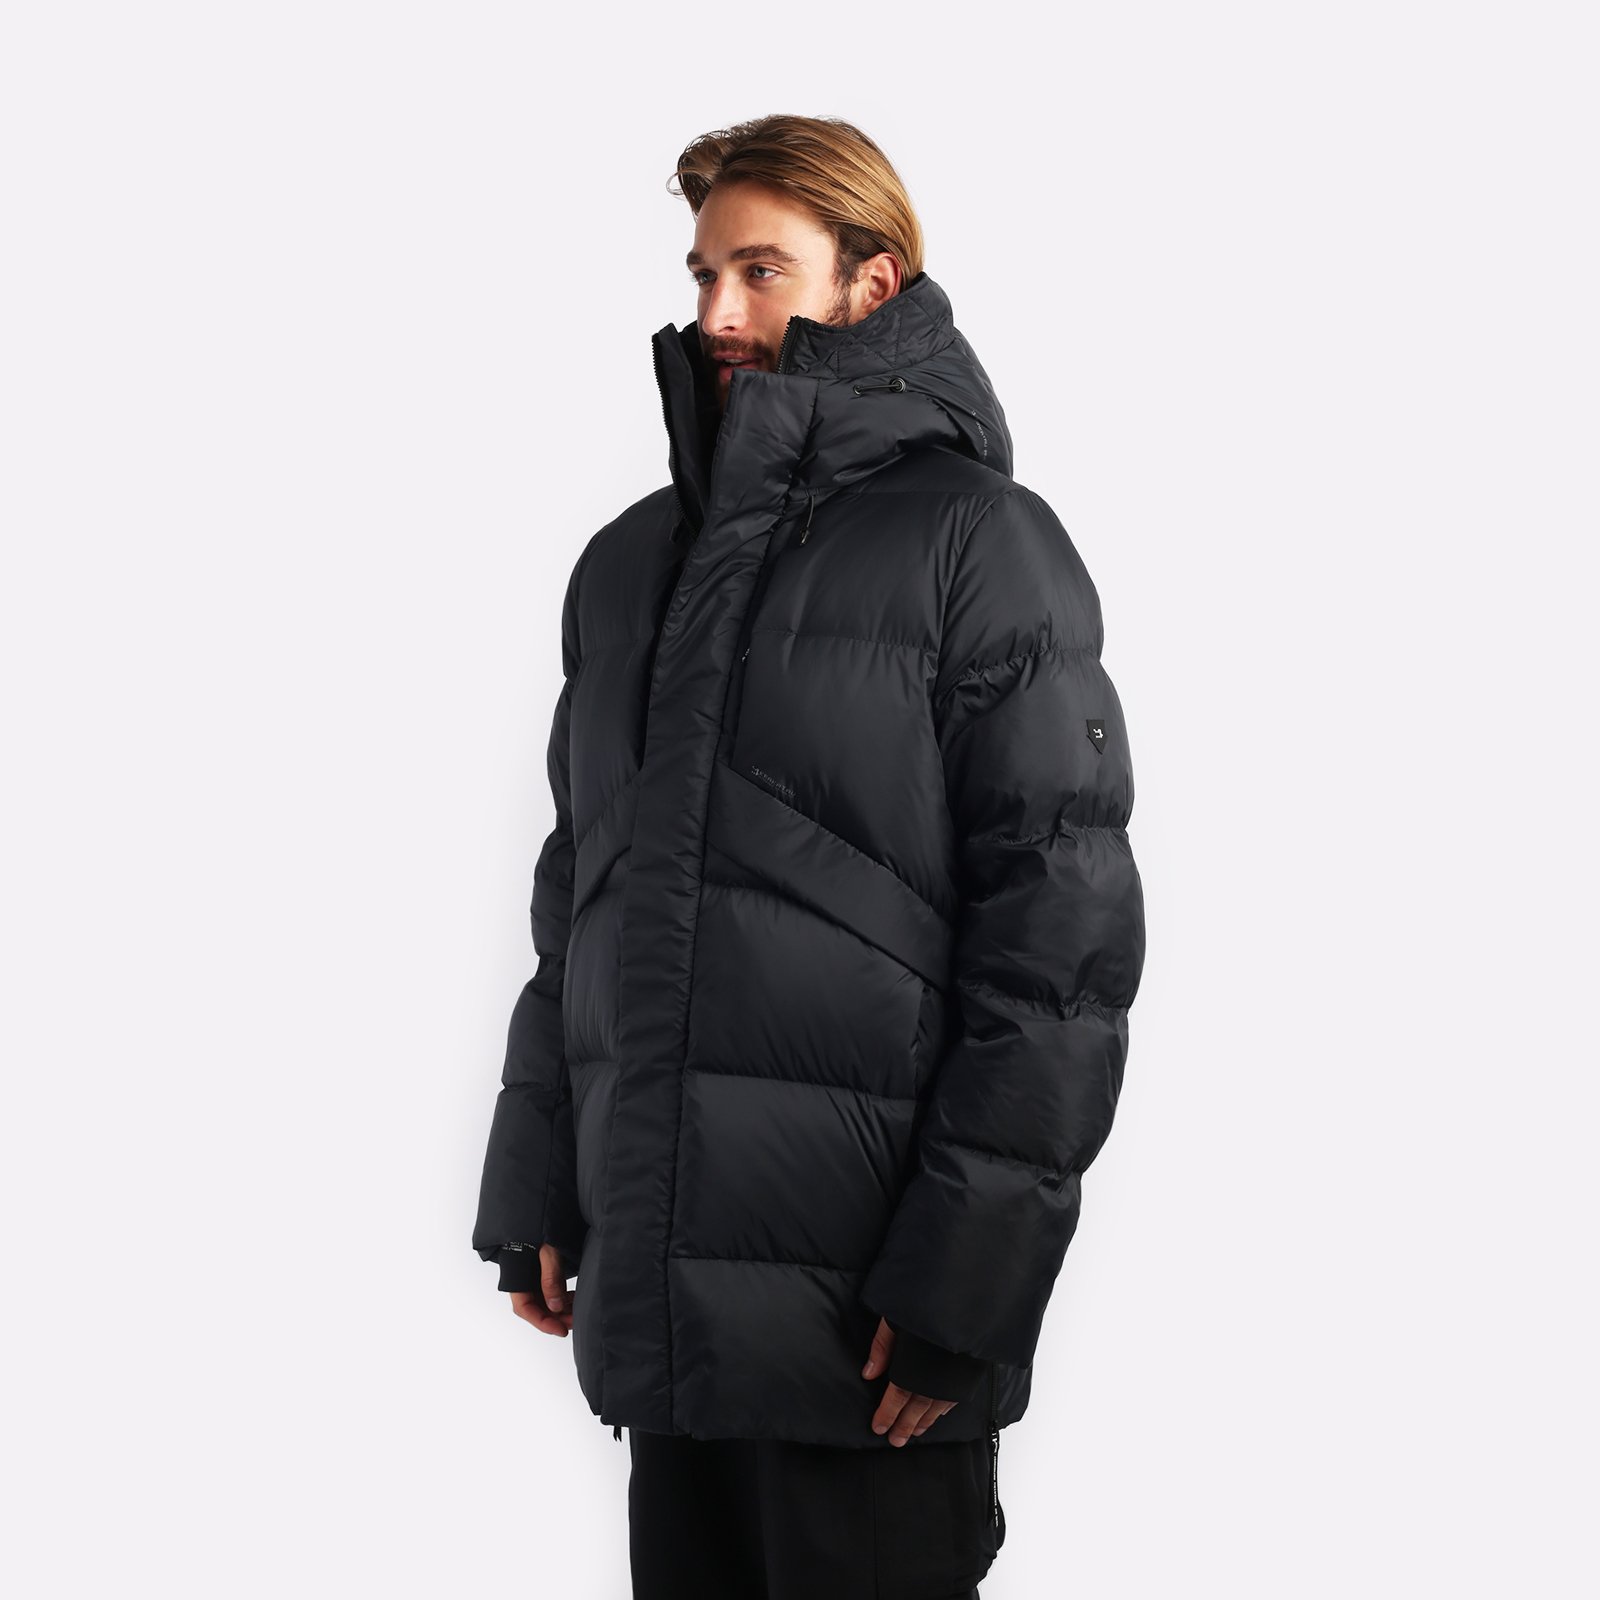 мужская куртка KRAKATAU Aitken  (Qm437-1-черный)  - цена, описание, фото 4